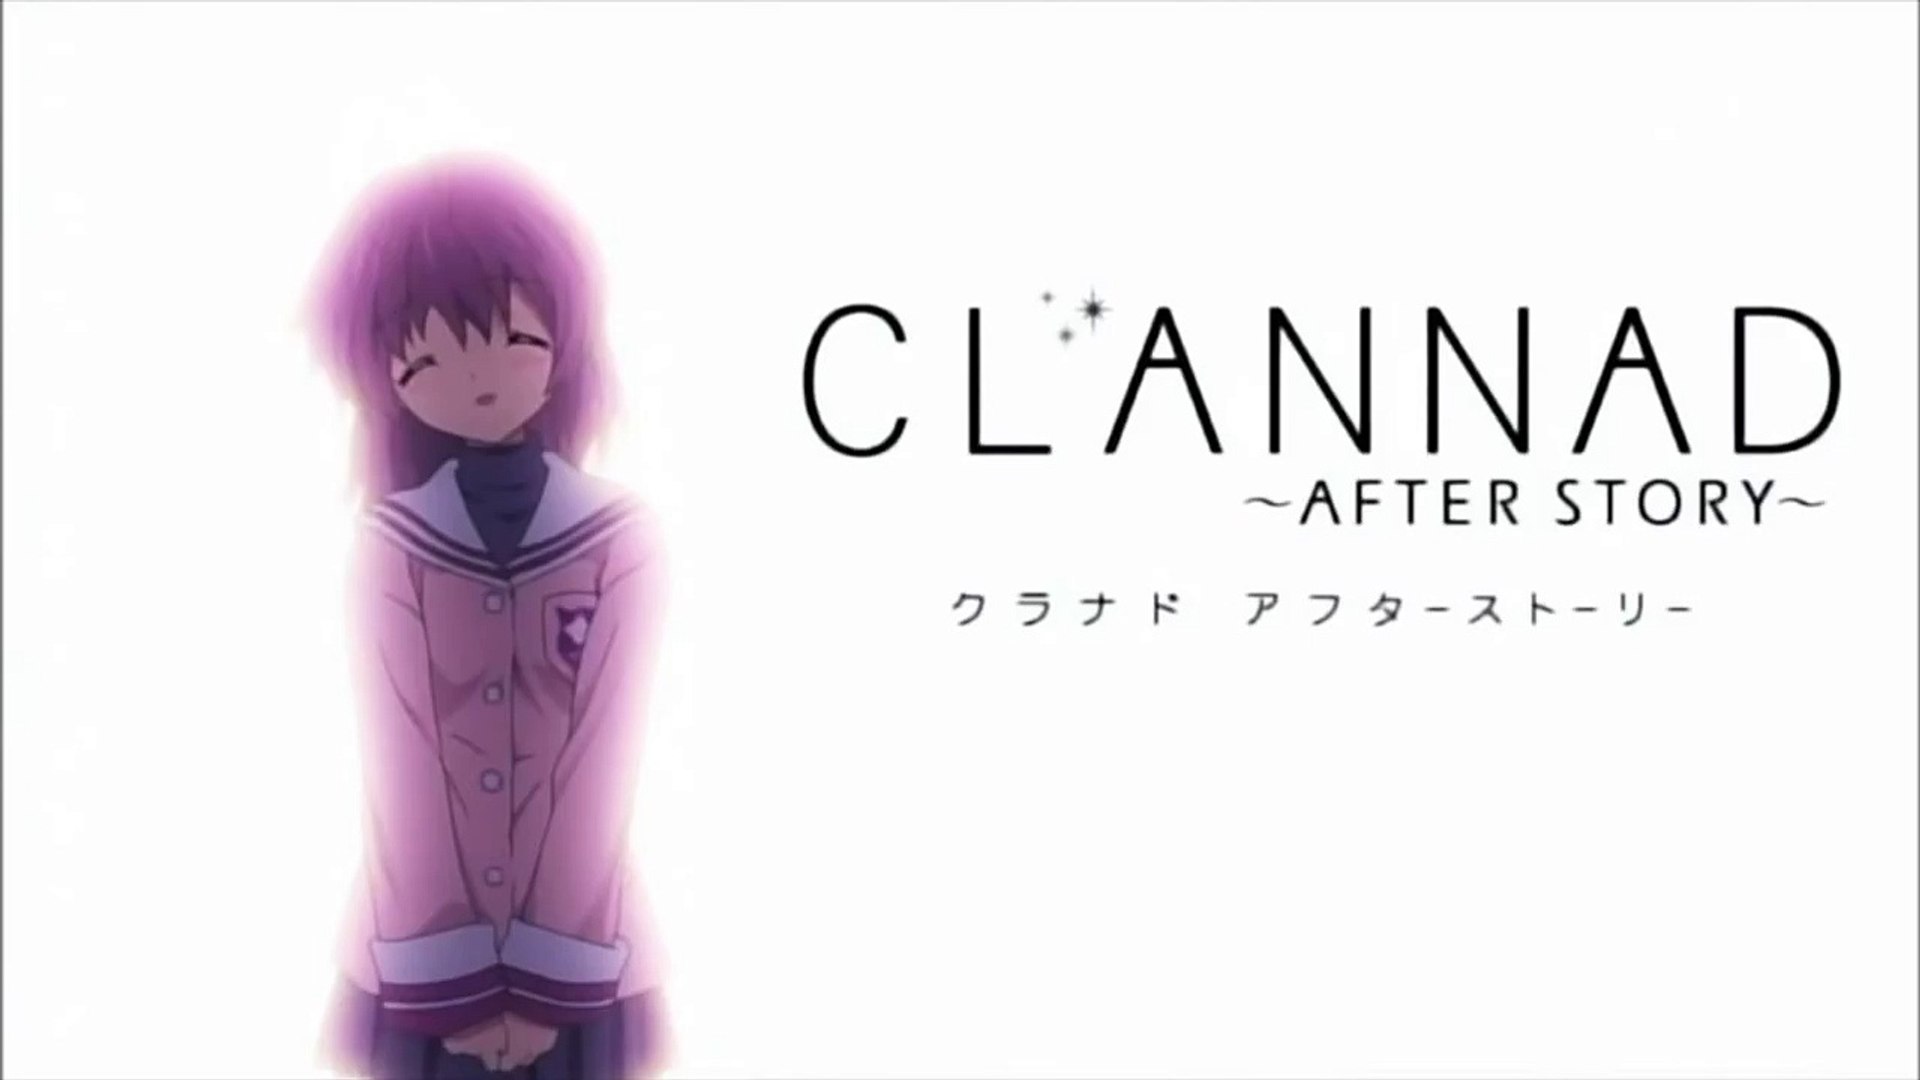 Clannad After Story Opening ~ Toki Wo Kizamu Uta - video